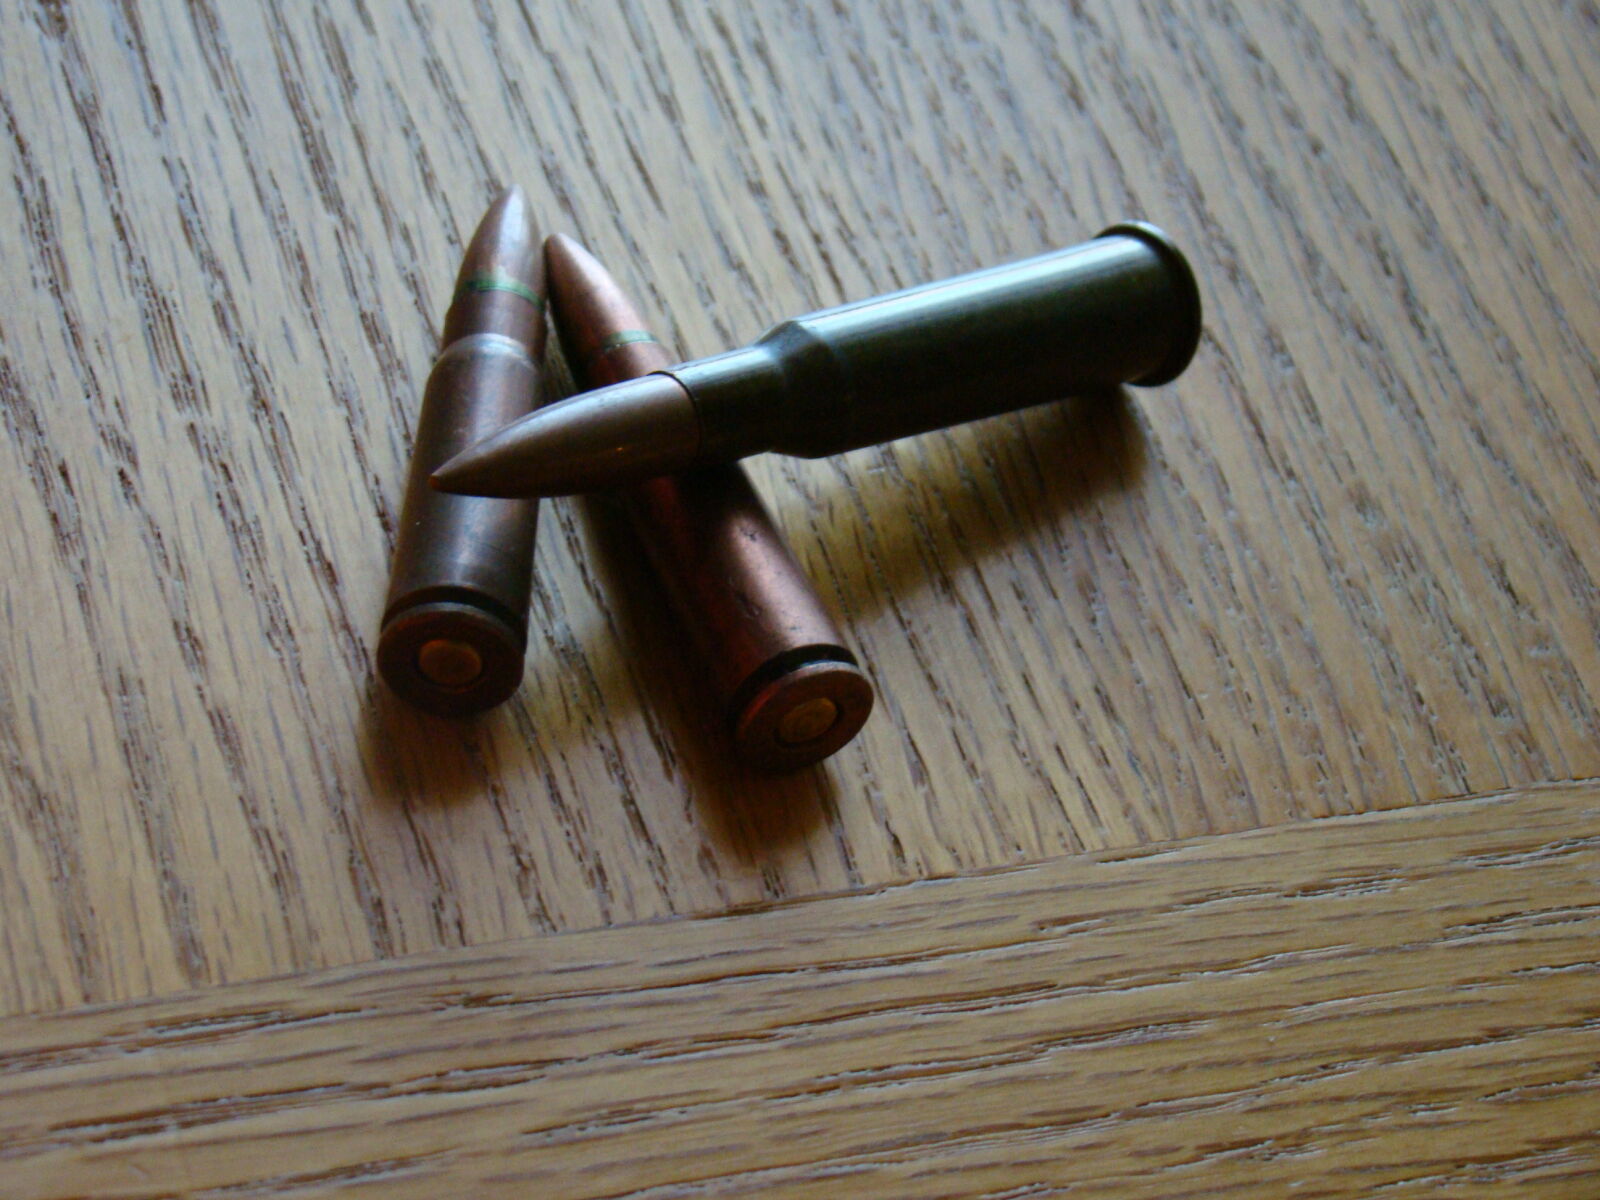 Sony Cyber-shot DSC-H50 sample photo. Bullets photography